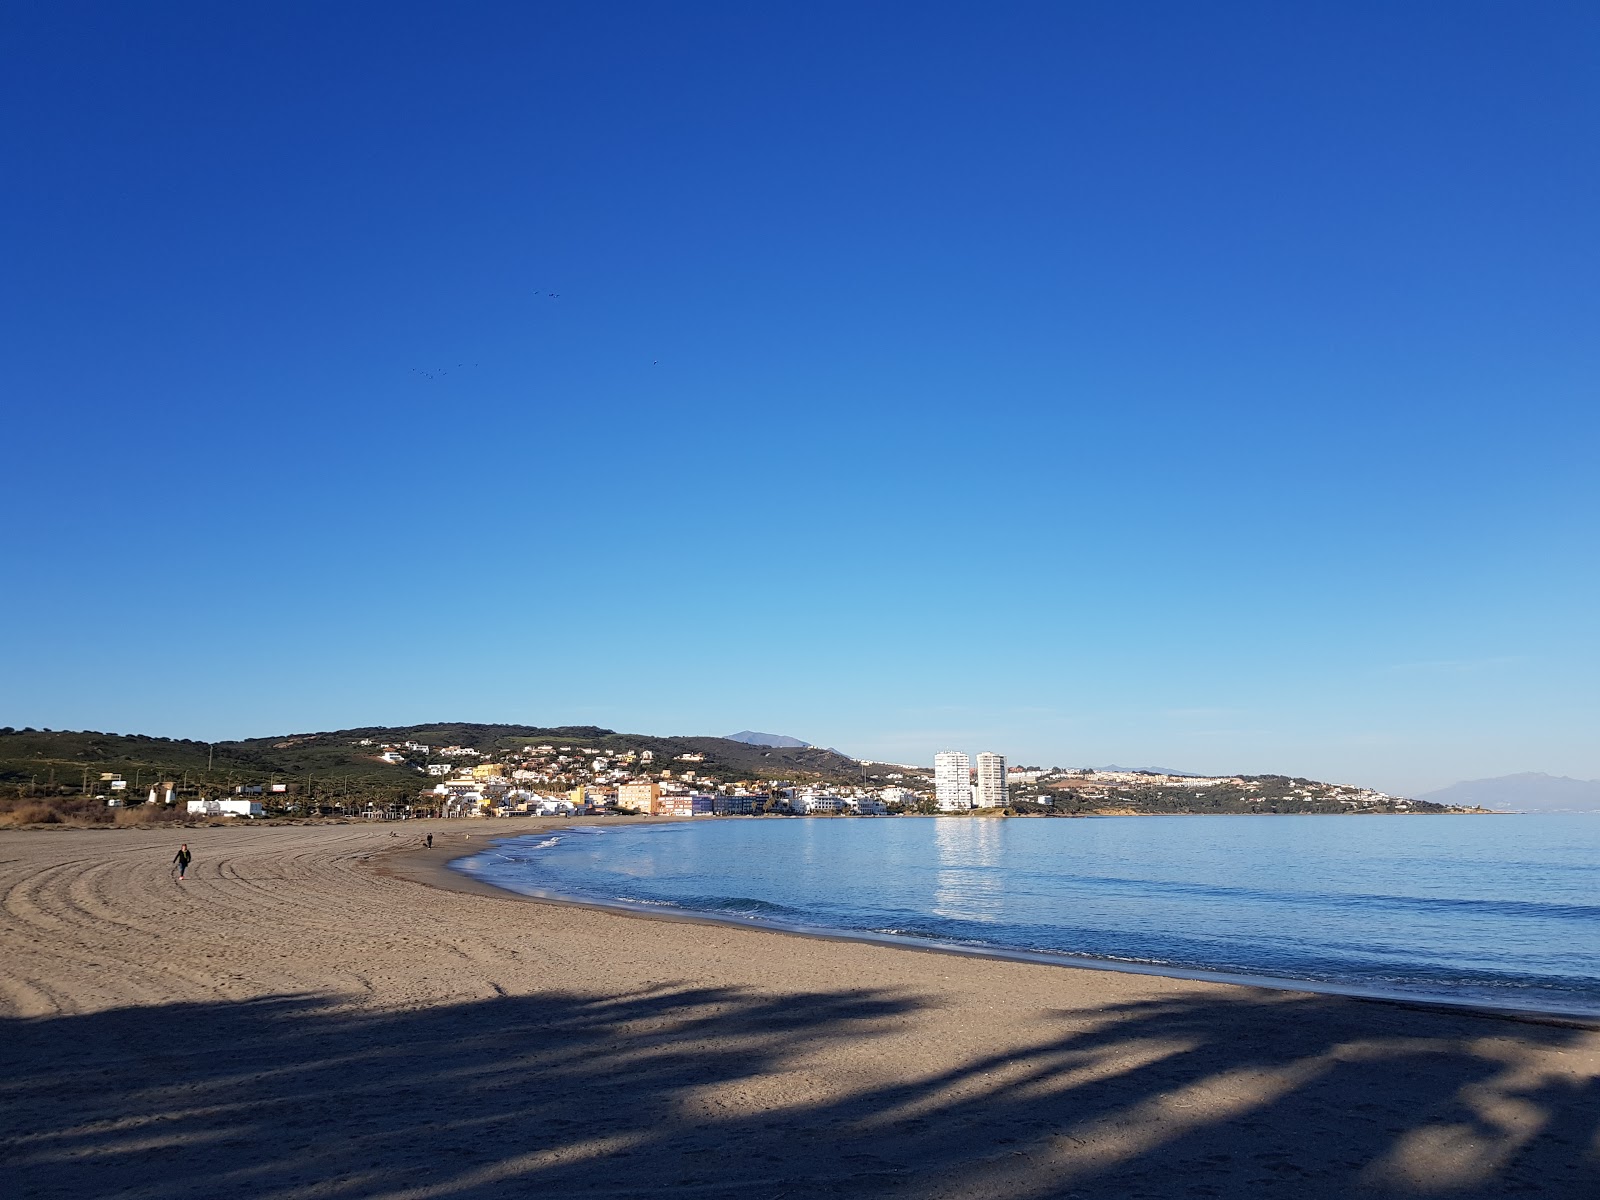 Foto de Playa de Torreguadiaro com areia cinza superfície